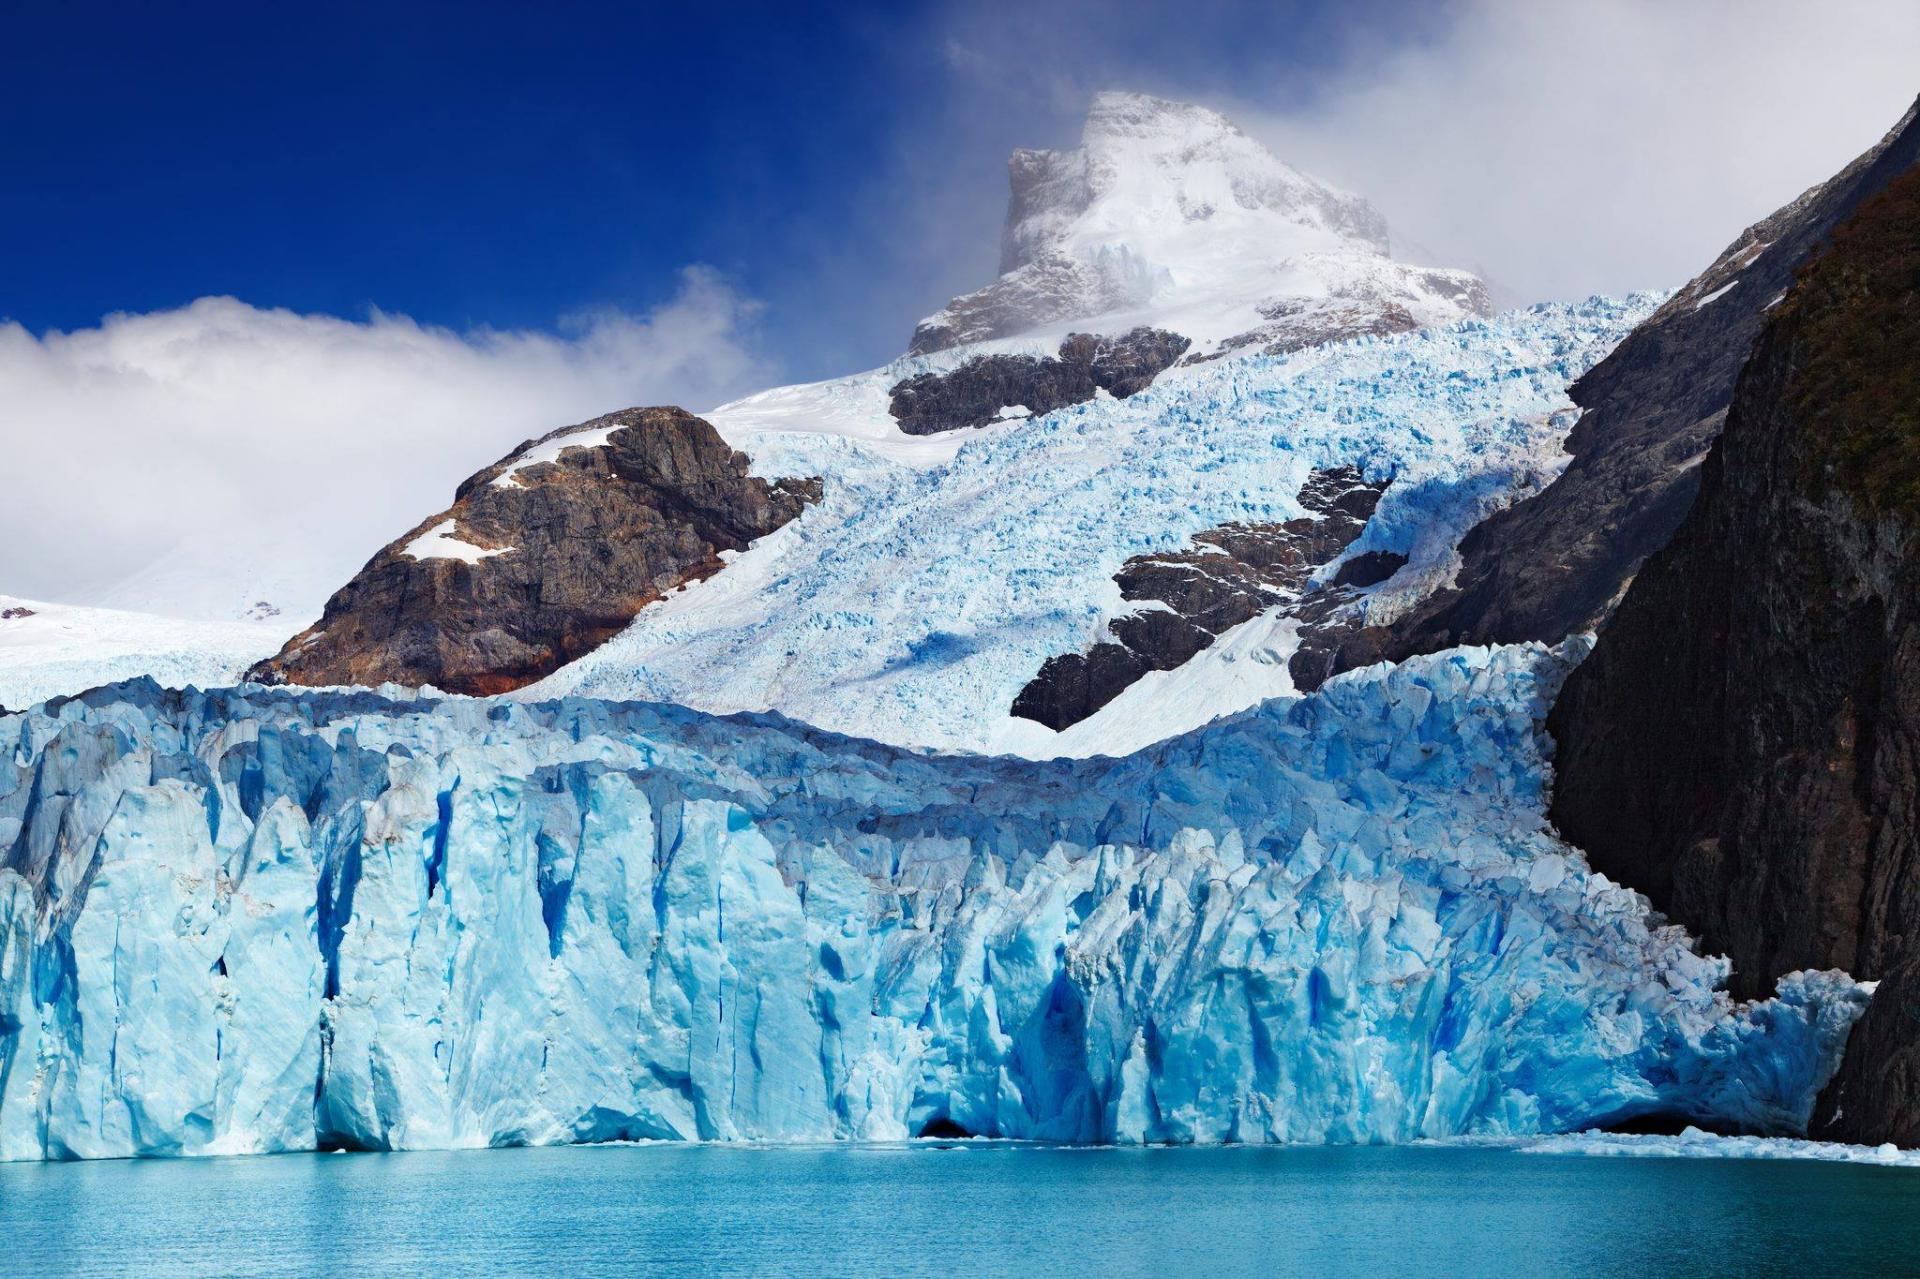 Glacier Spegazzini - Argentine